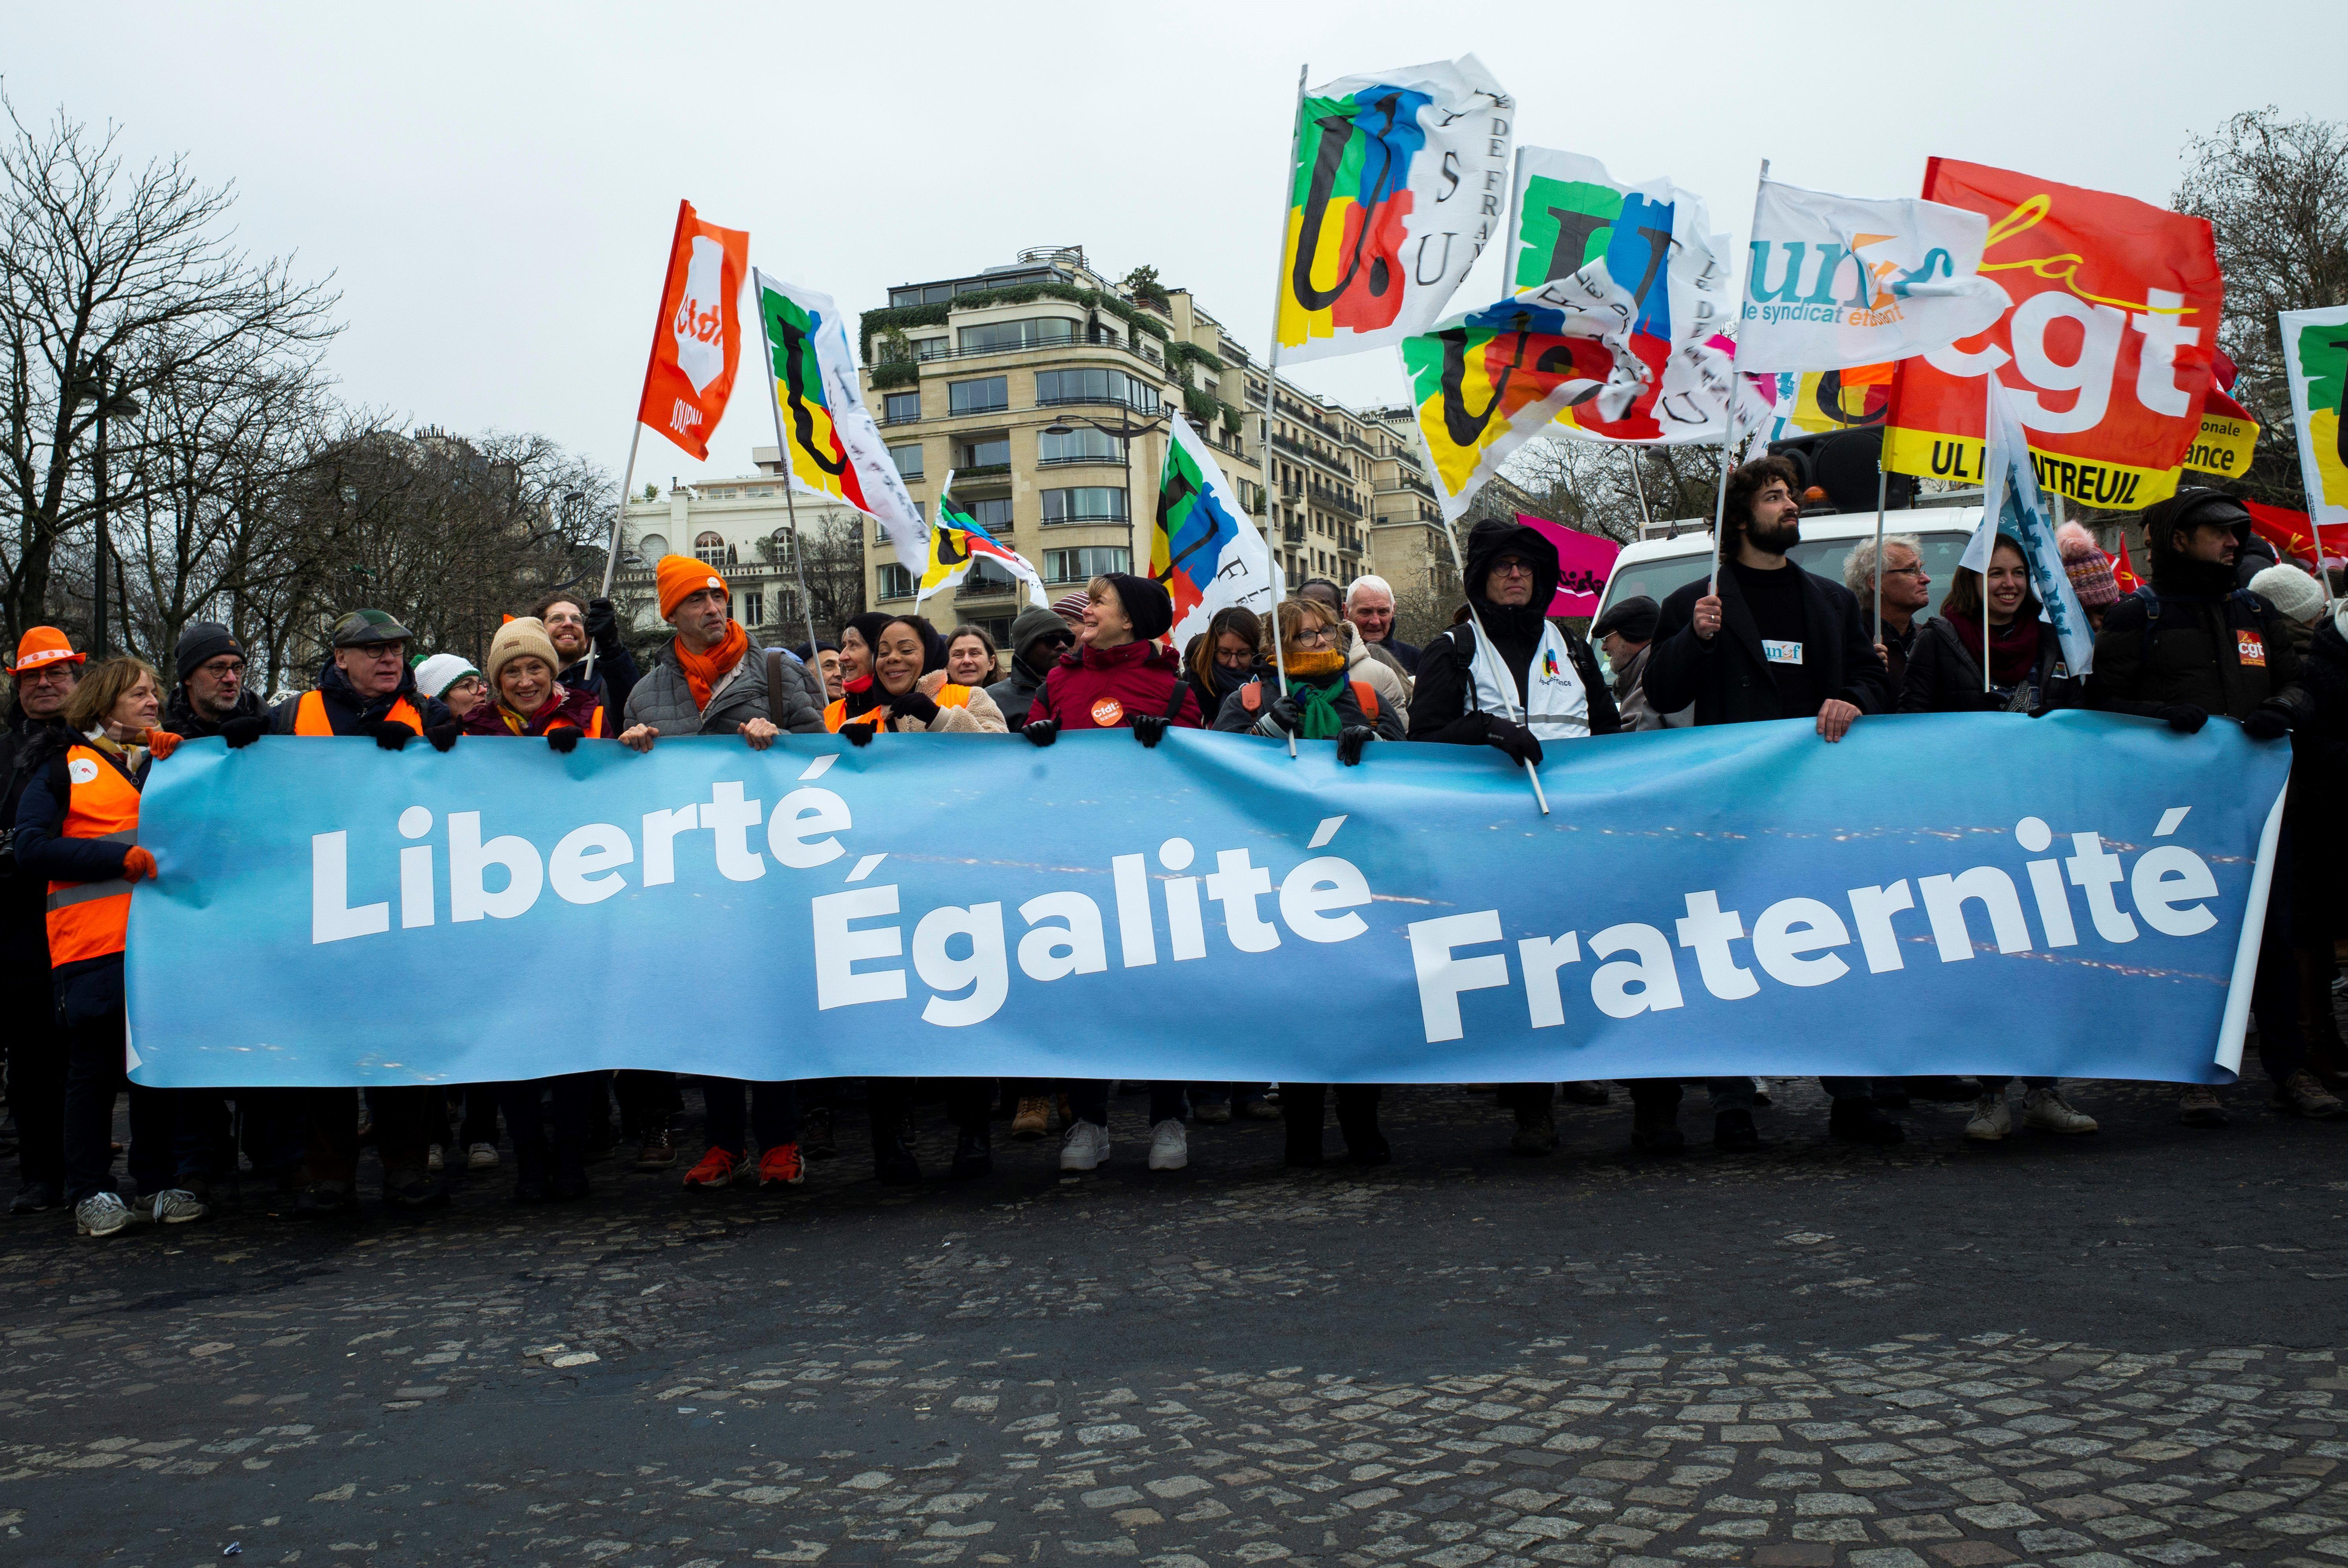 Manifestantes en las calles de francia sostienen una pancarta con el lema "Liberté, Égalité, Fraternité"